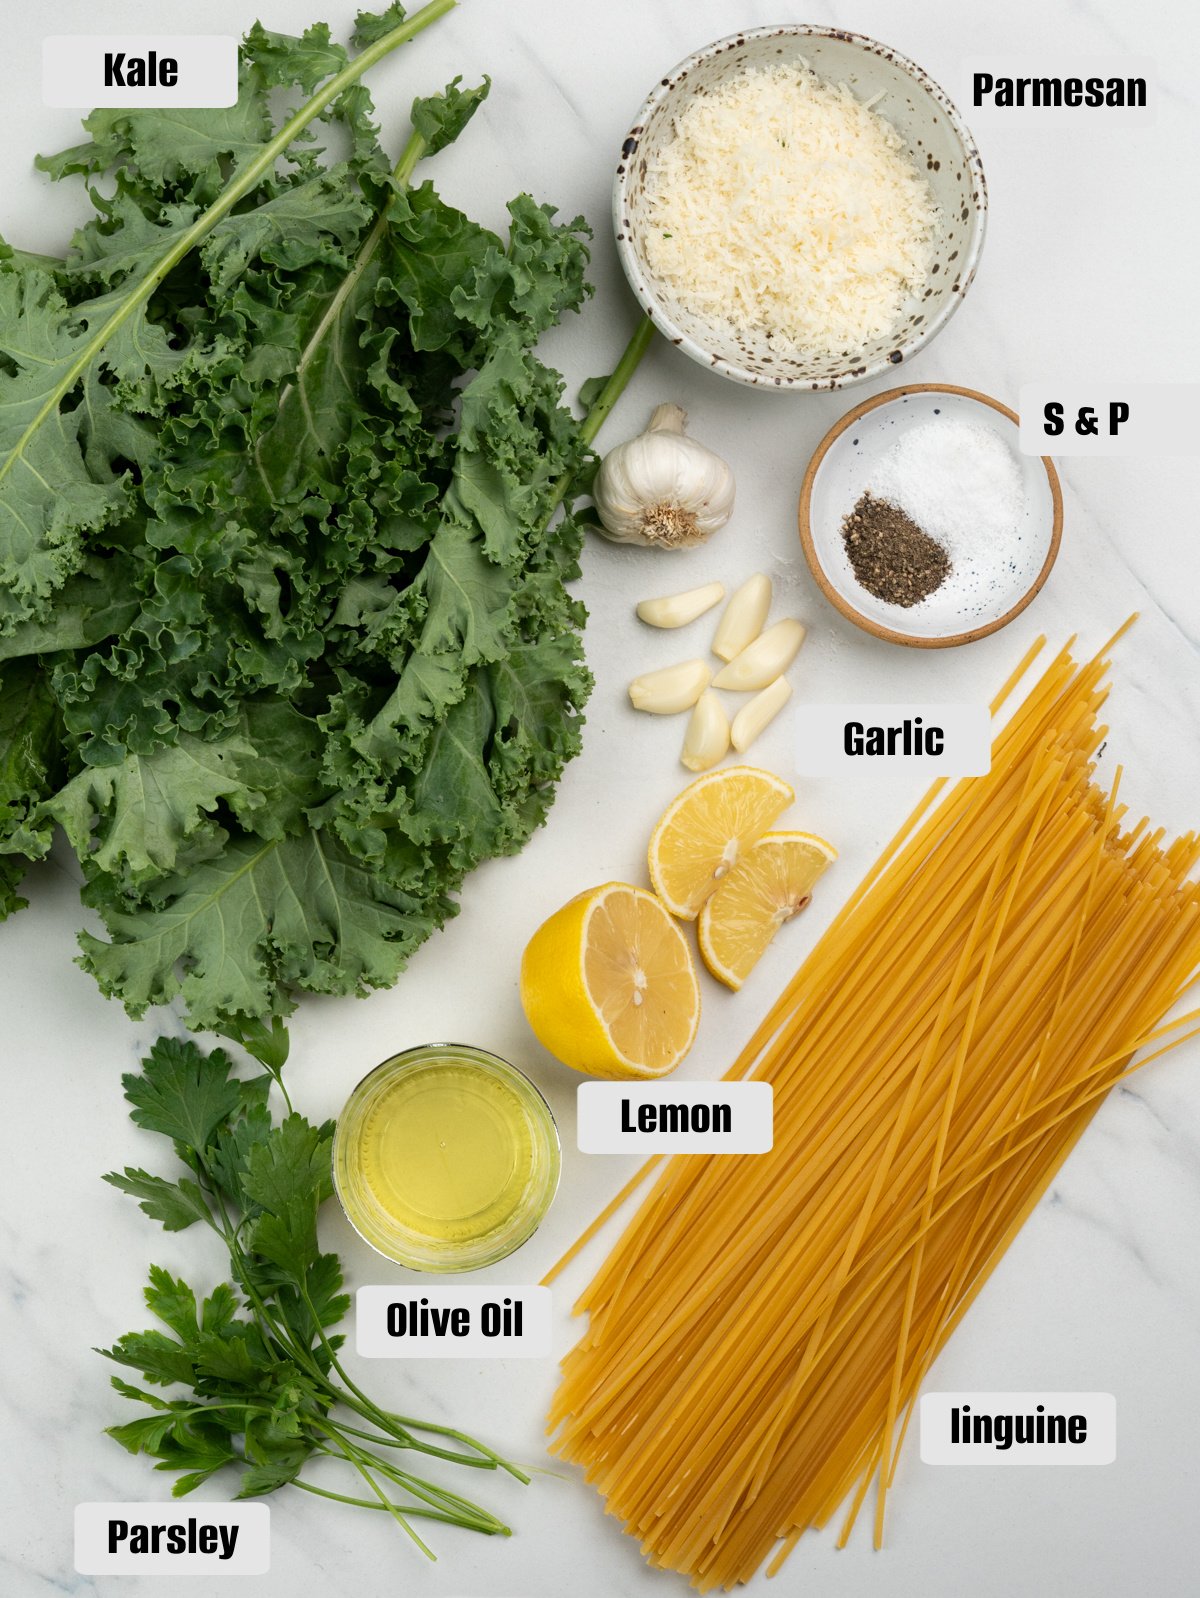 Ingredients for Kale pasta